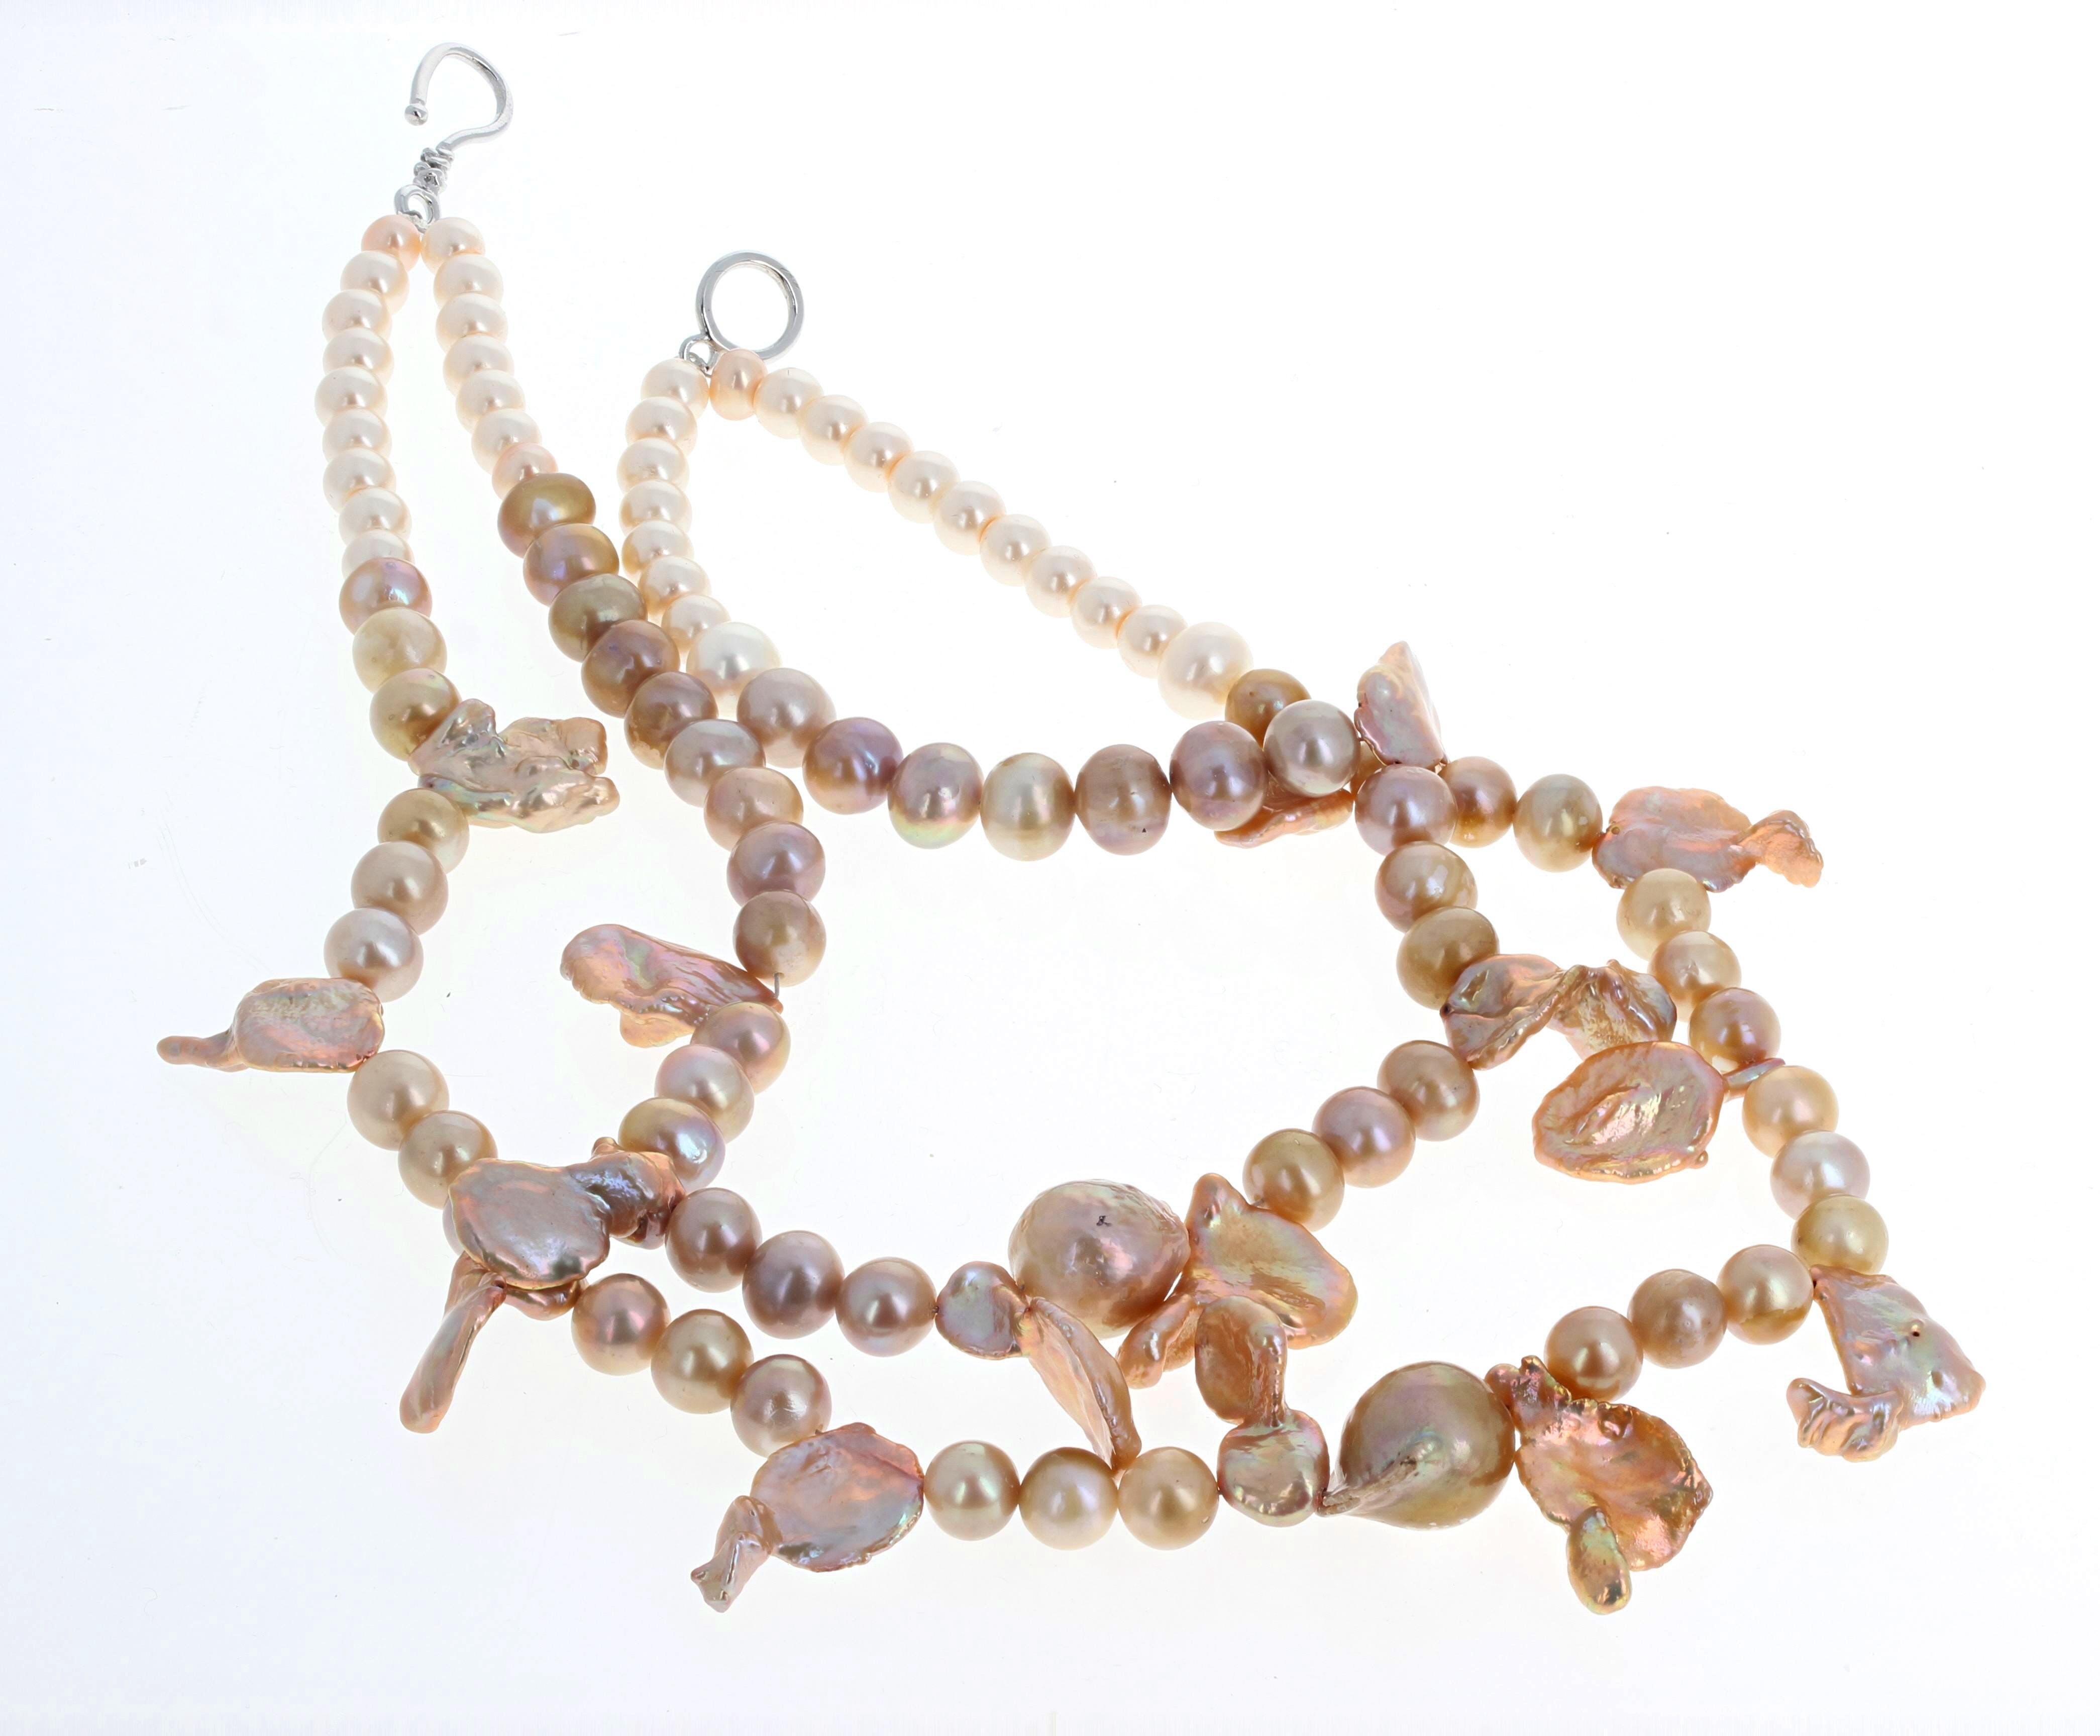 Die schönen, natürlichen Perlen in vielen verschiedenen Farben werden durch die flippigen Keshi-Perlen in der 15 Zoll langen Halskette ergänzt.  Die größten Rondellperlen sind ca. 8 mm groß, die großen Perlen sind ca. 14 mm x 12 mm groß, und die